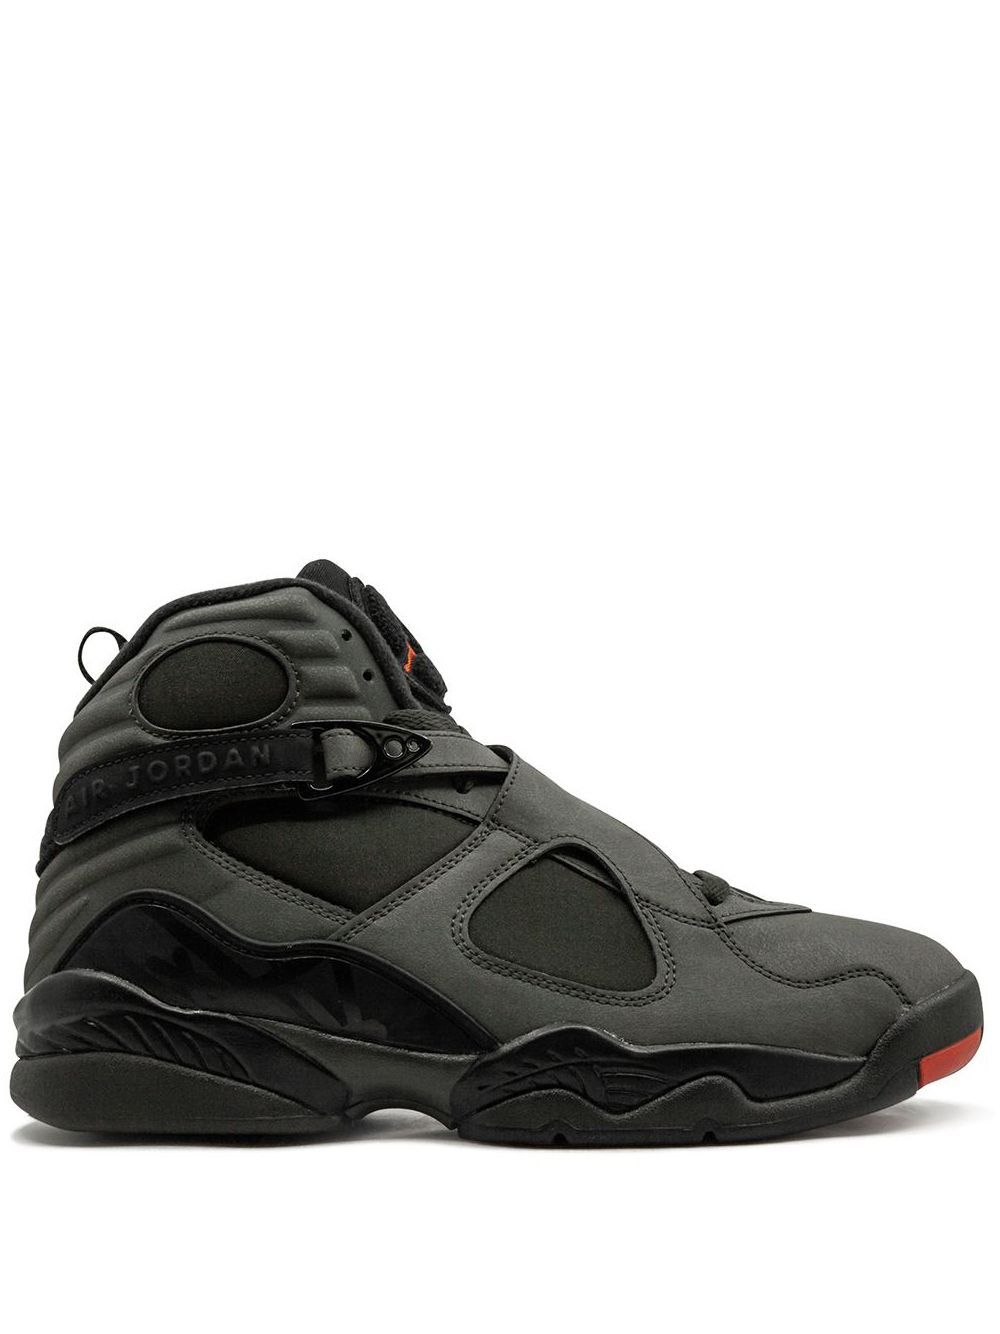 Jordan Air Jordan 8 Retro "Take Flight" sneakers - Black